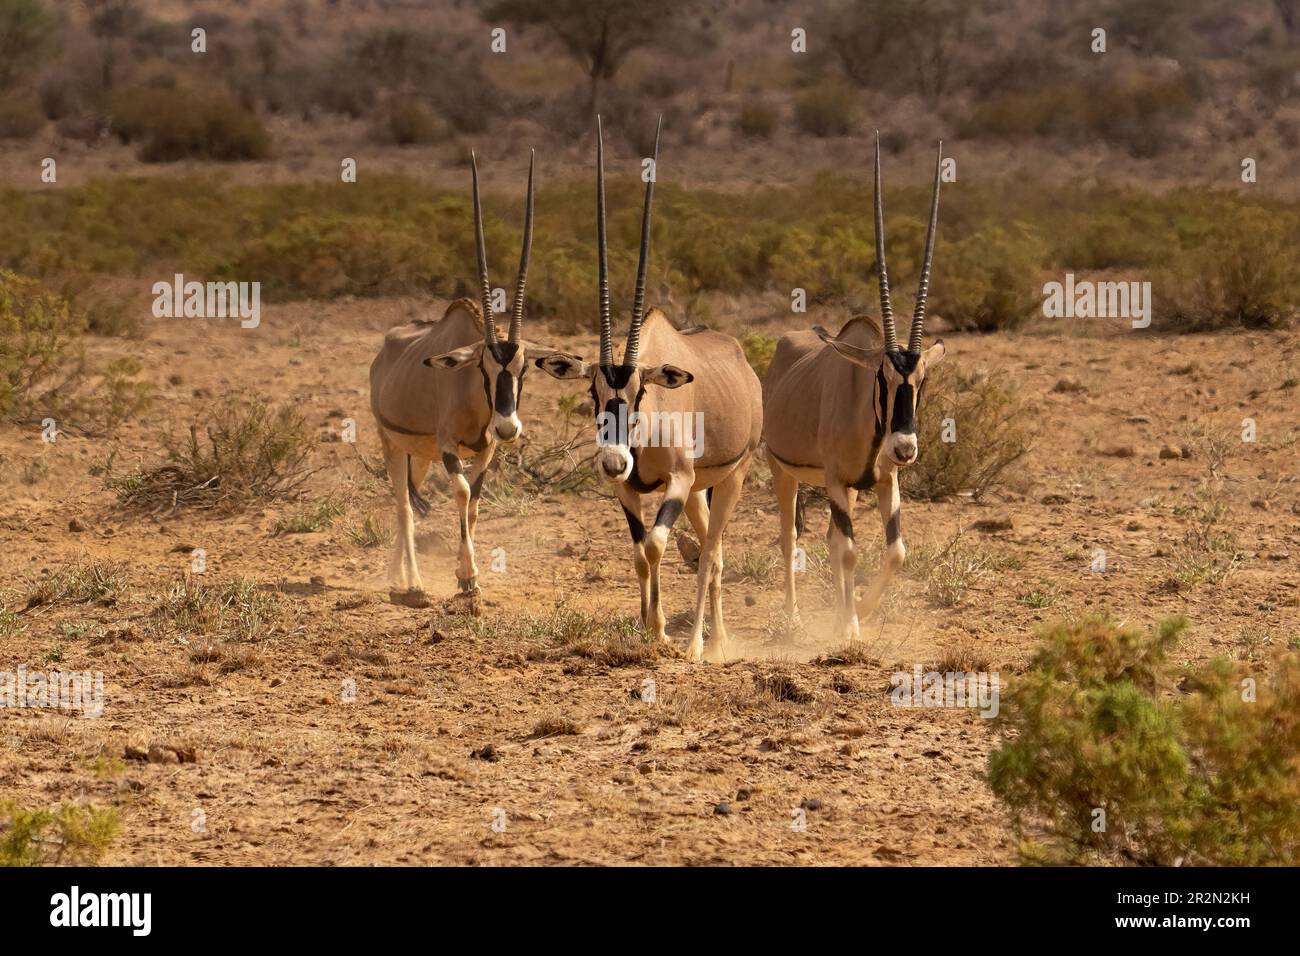 Groupe de trois Oryx dans le désert, réserve nationale de Samburu, Kenya, Afrique de l'est Banque D'Images